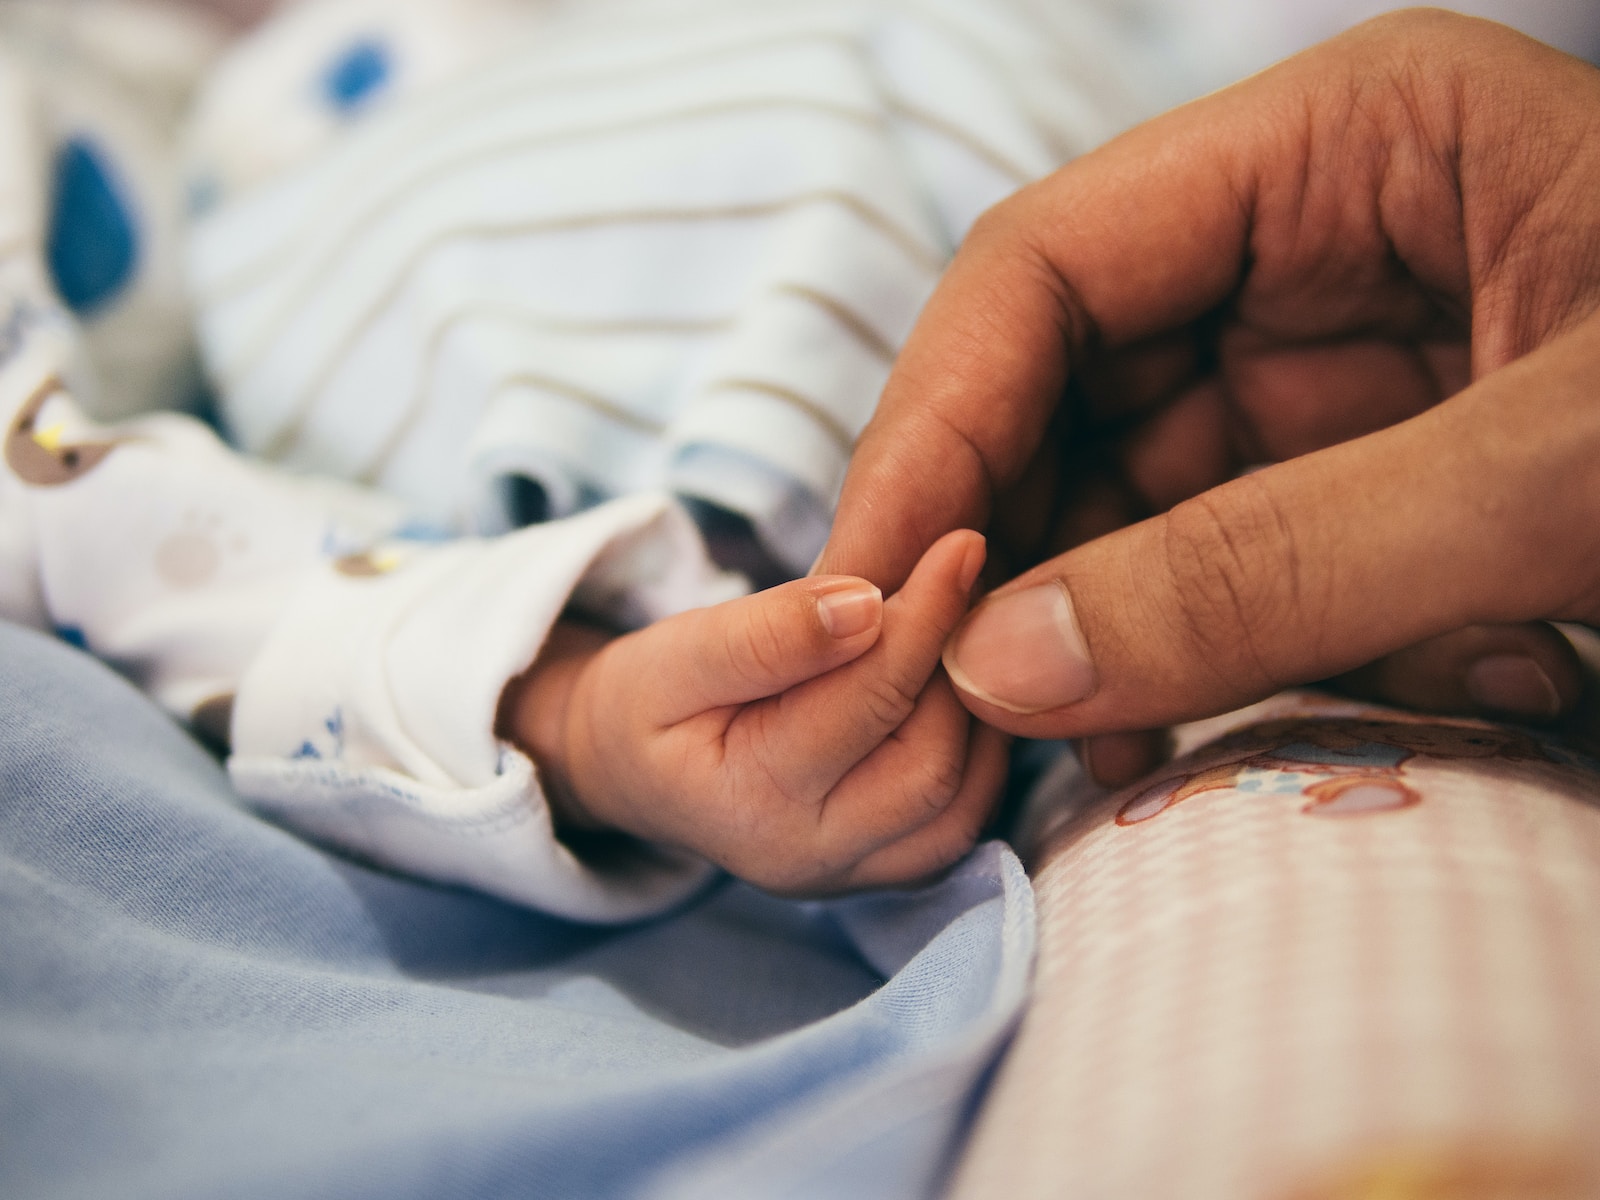 רשלנות רפואית בלידה או אחרי לידה – את מי תובעים?